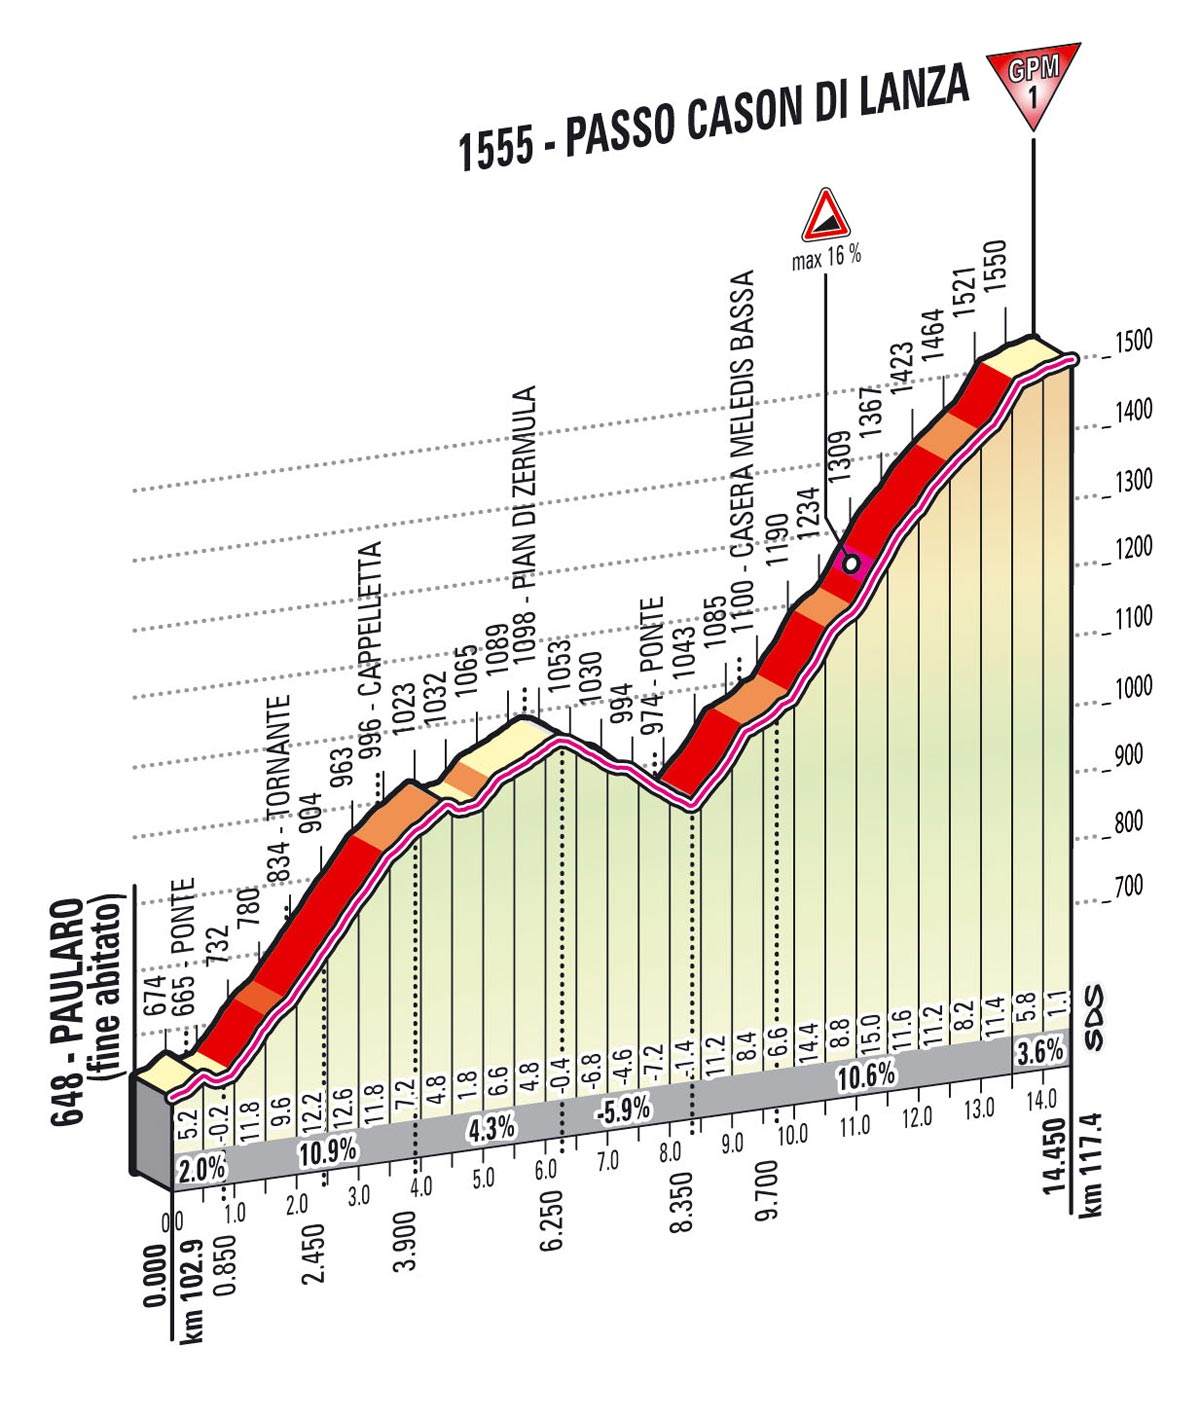 Giro d'Italia 2013 stage 10, Passo Cason di Lanza profile